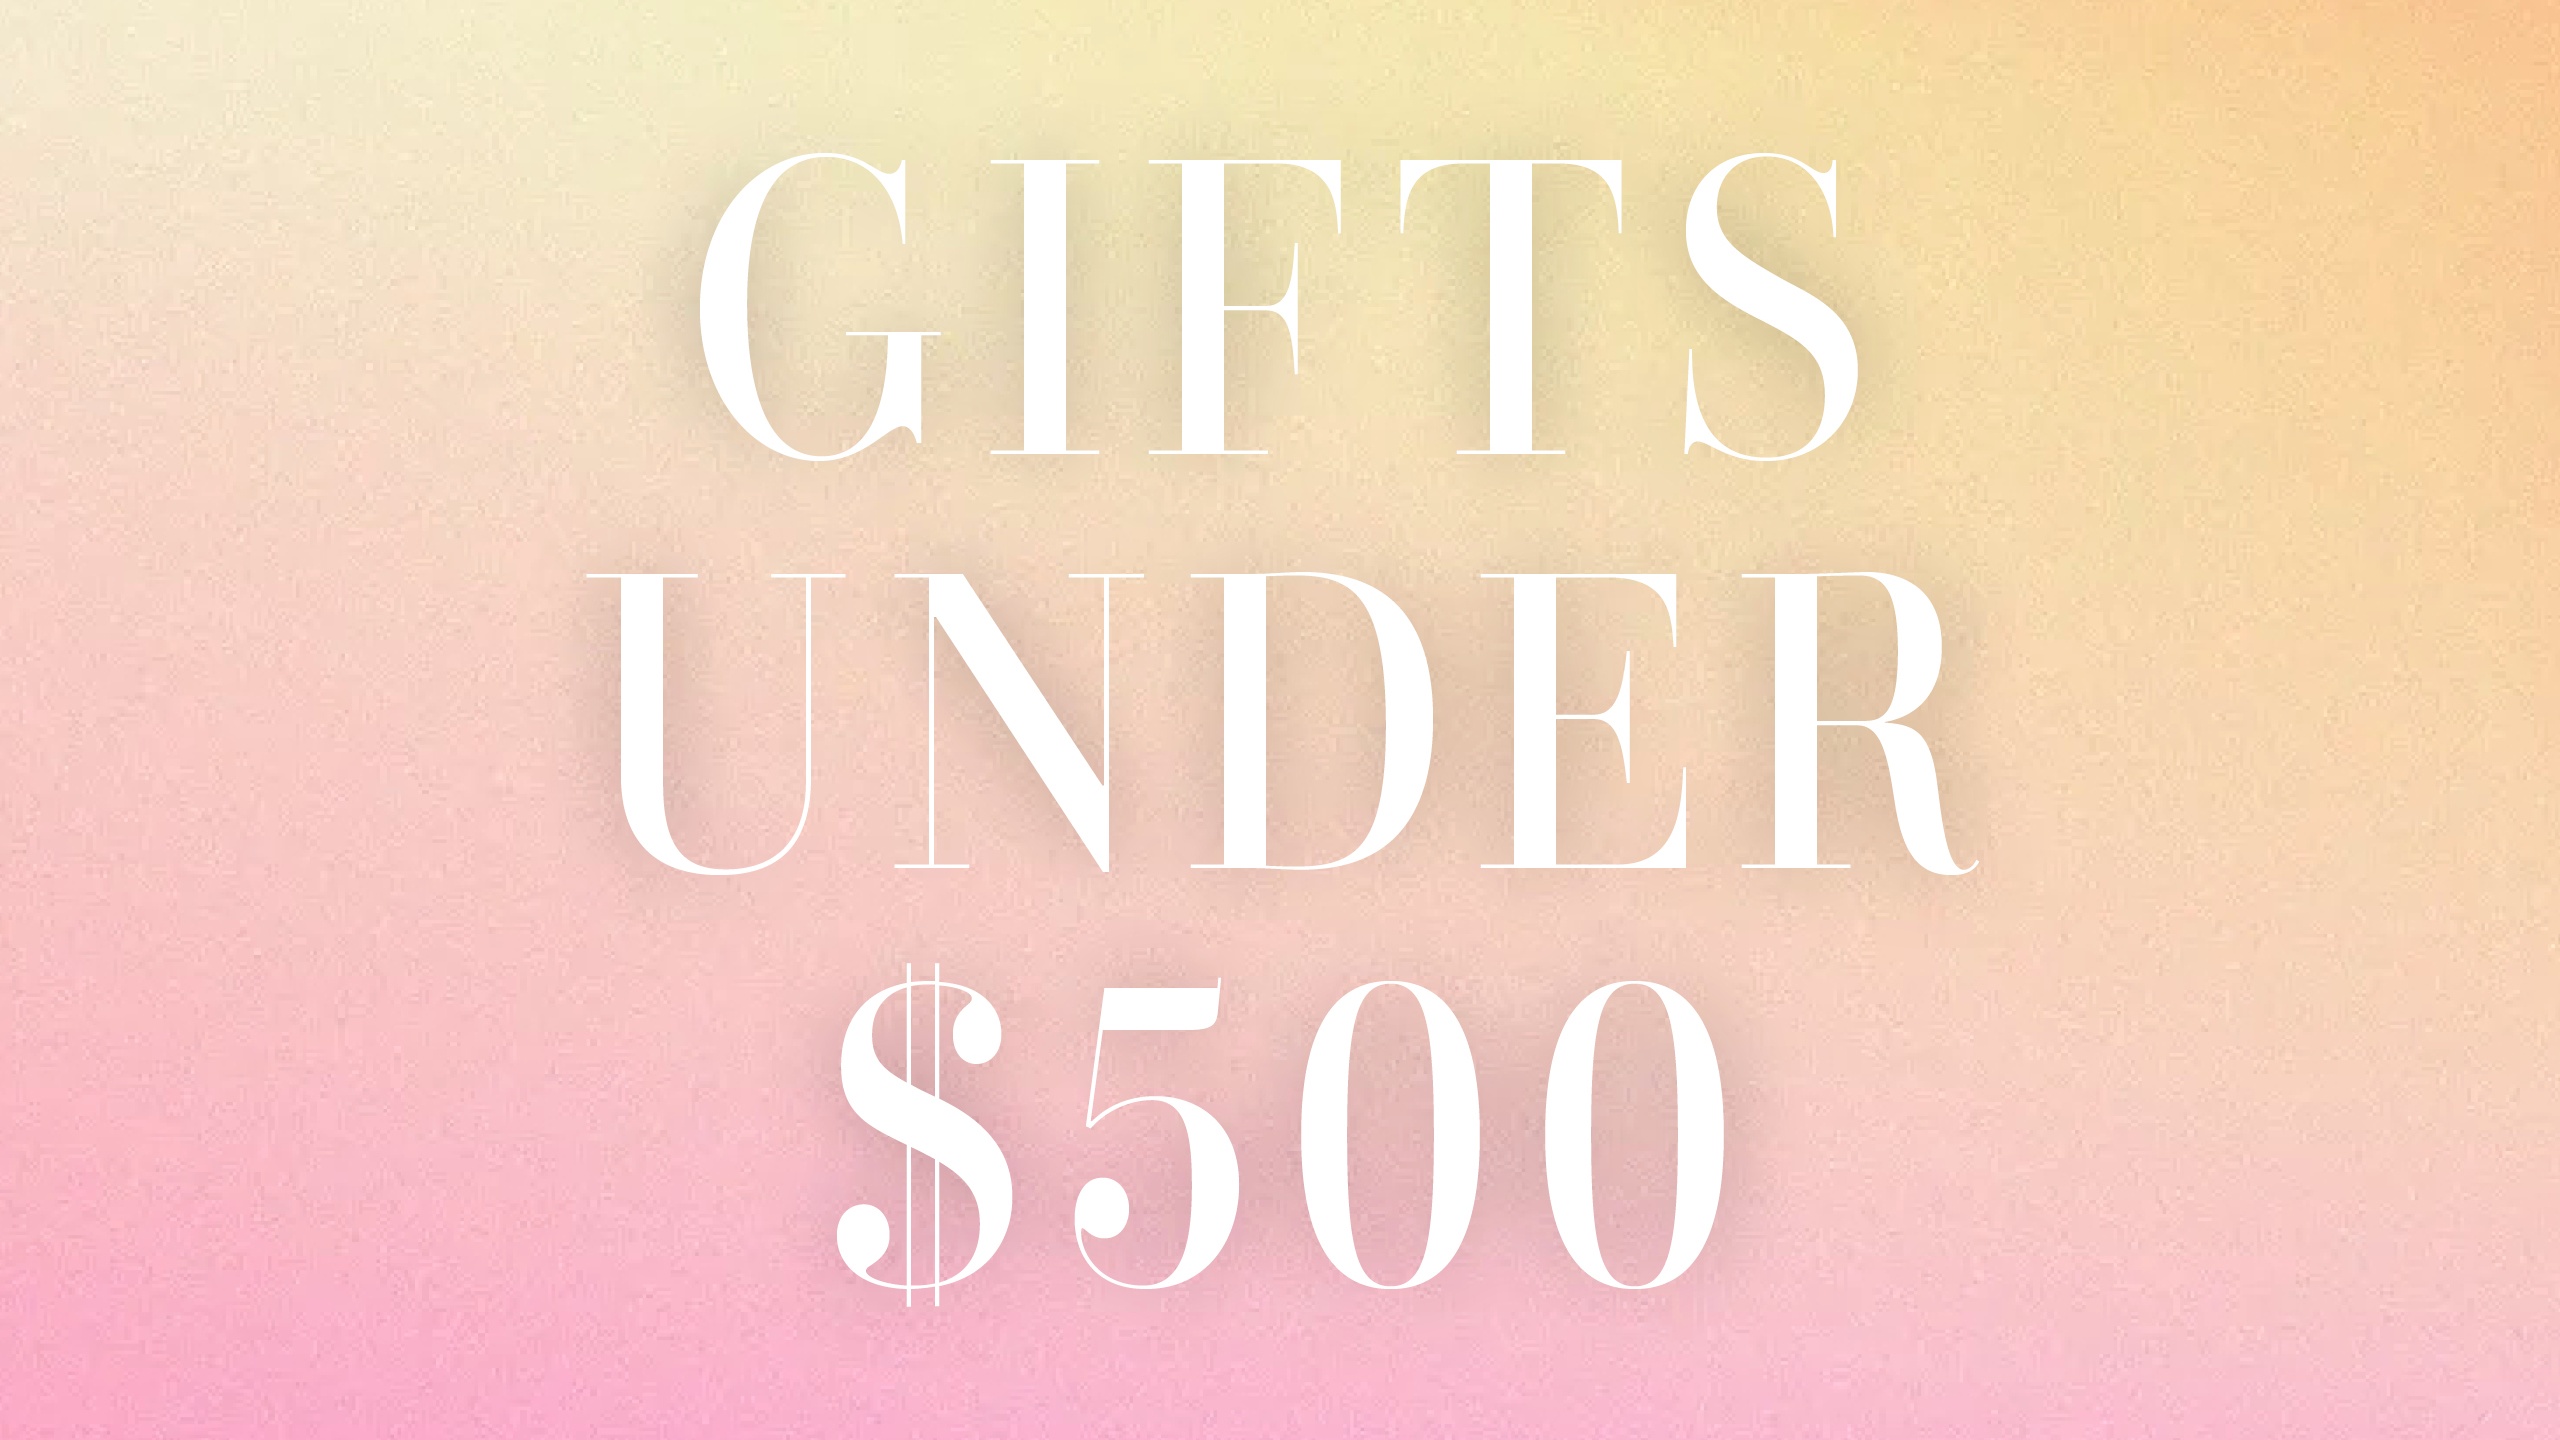 Best Gifts Under $500